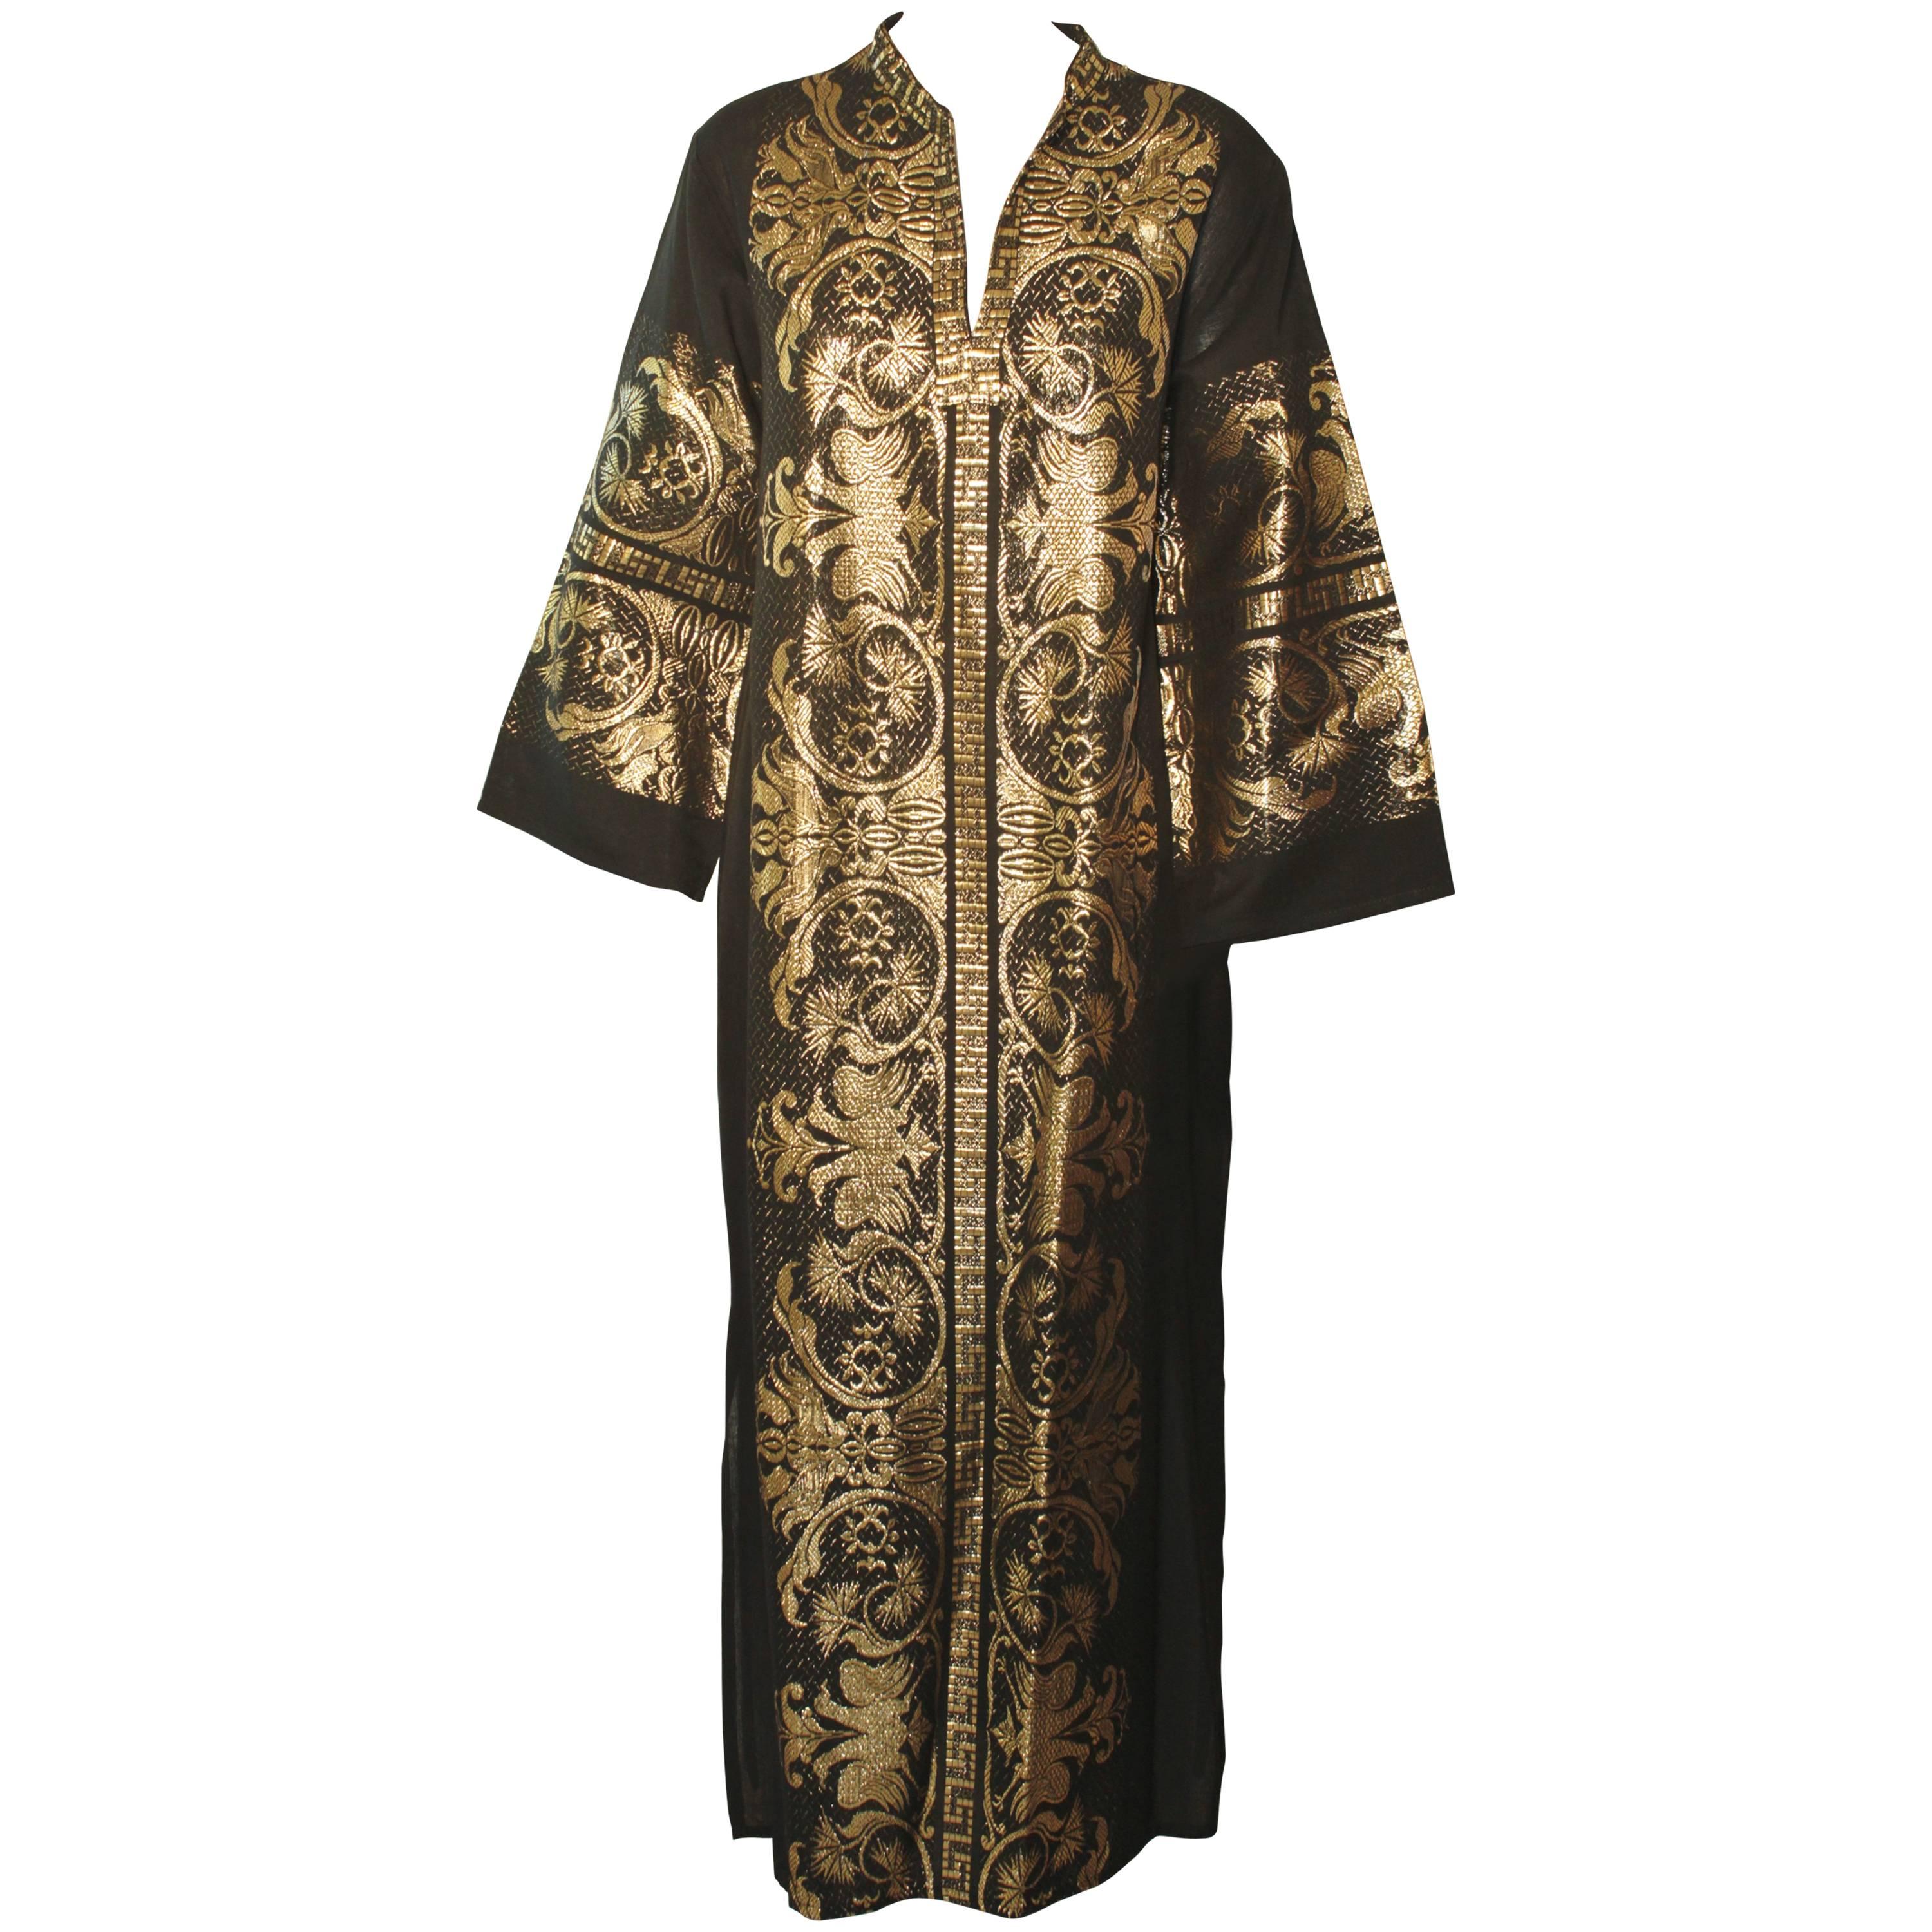 Caftan Black and Gold, 1970s, Maxi Dress Greek Kaftan Size M to L